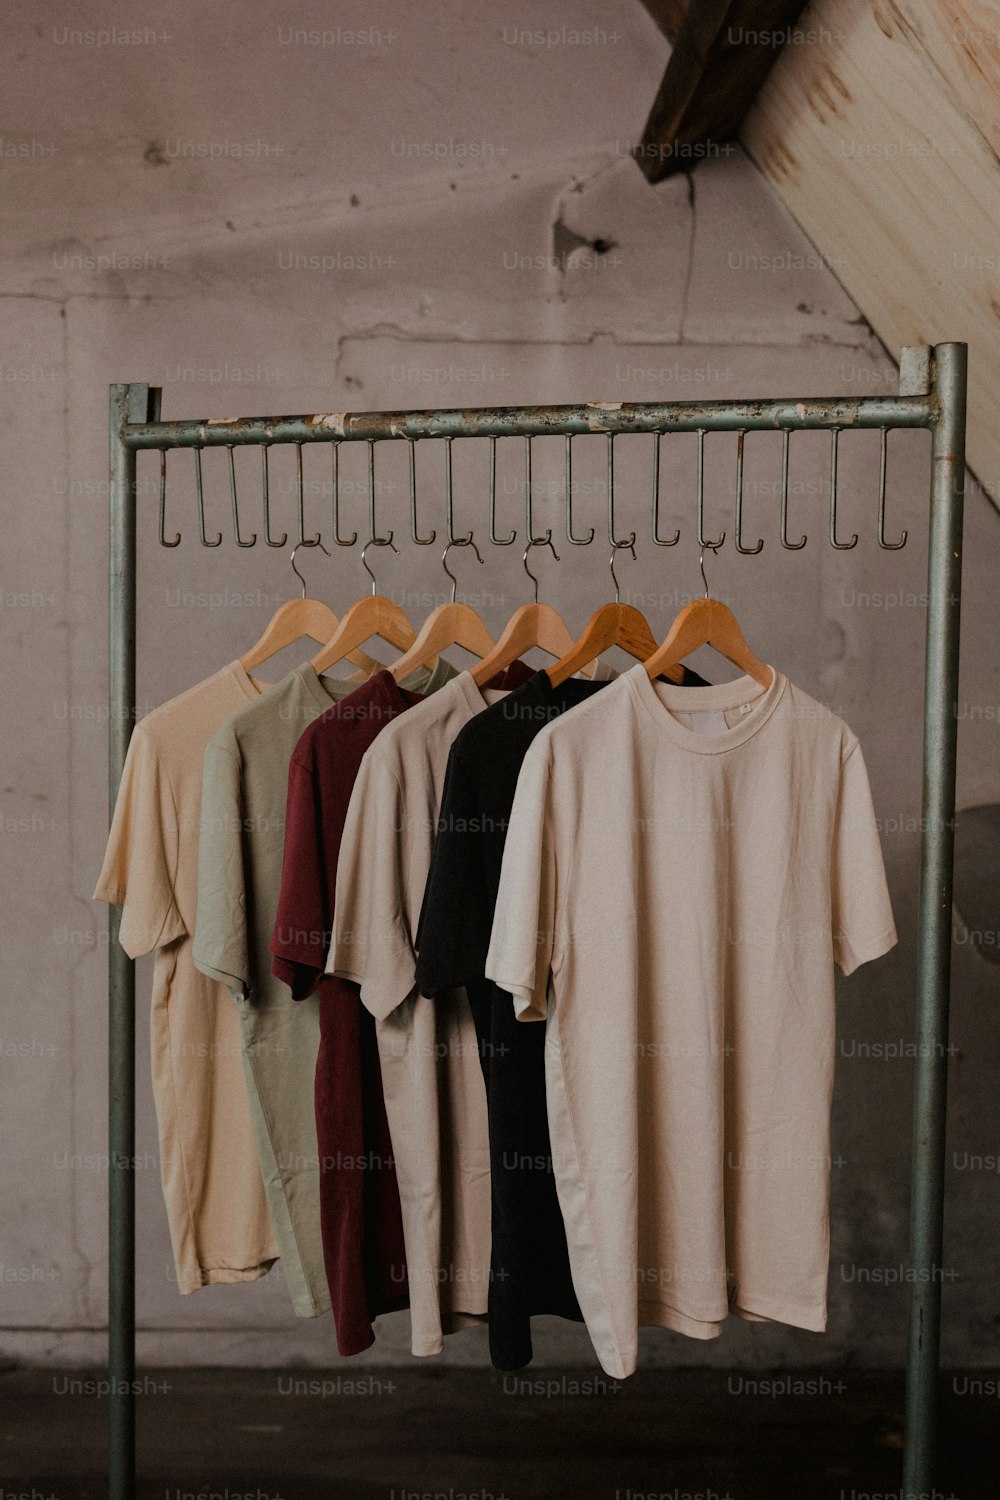 Un estante de camisetas - camisetas colgadas en un perchero